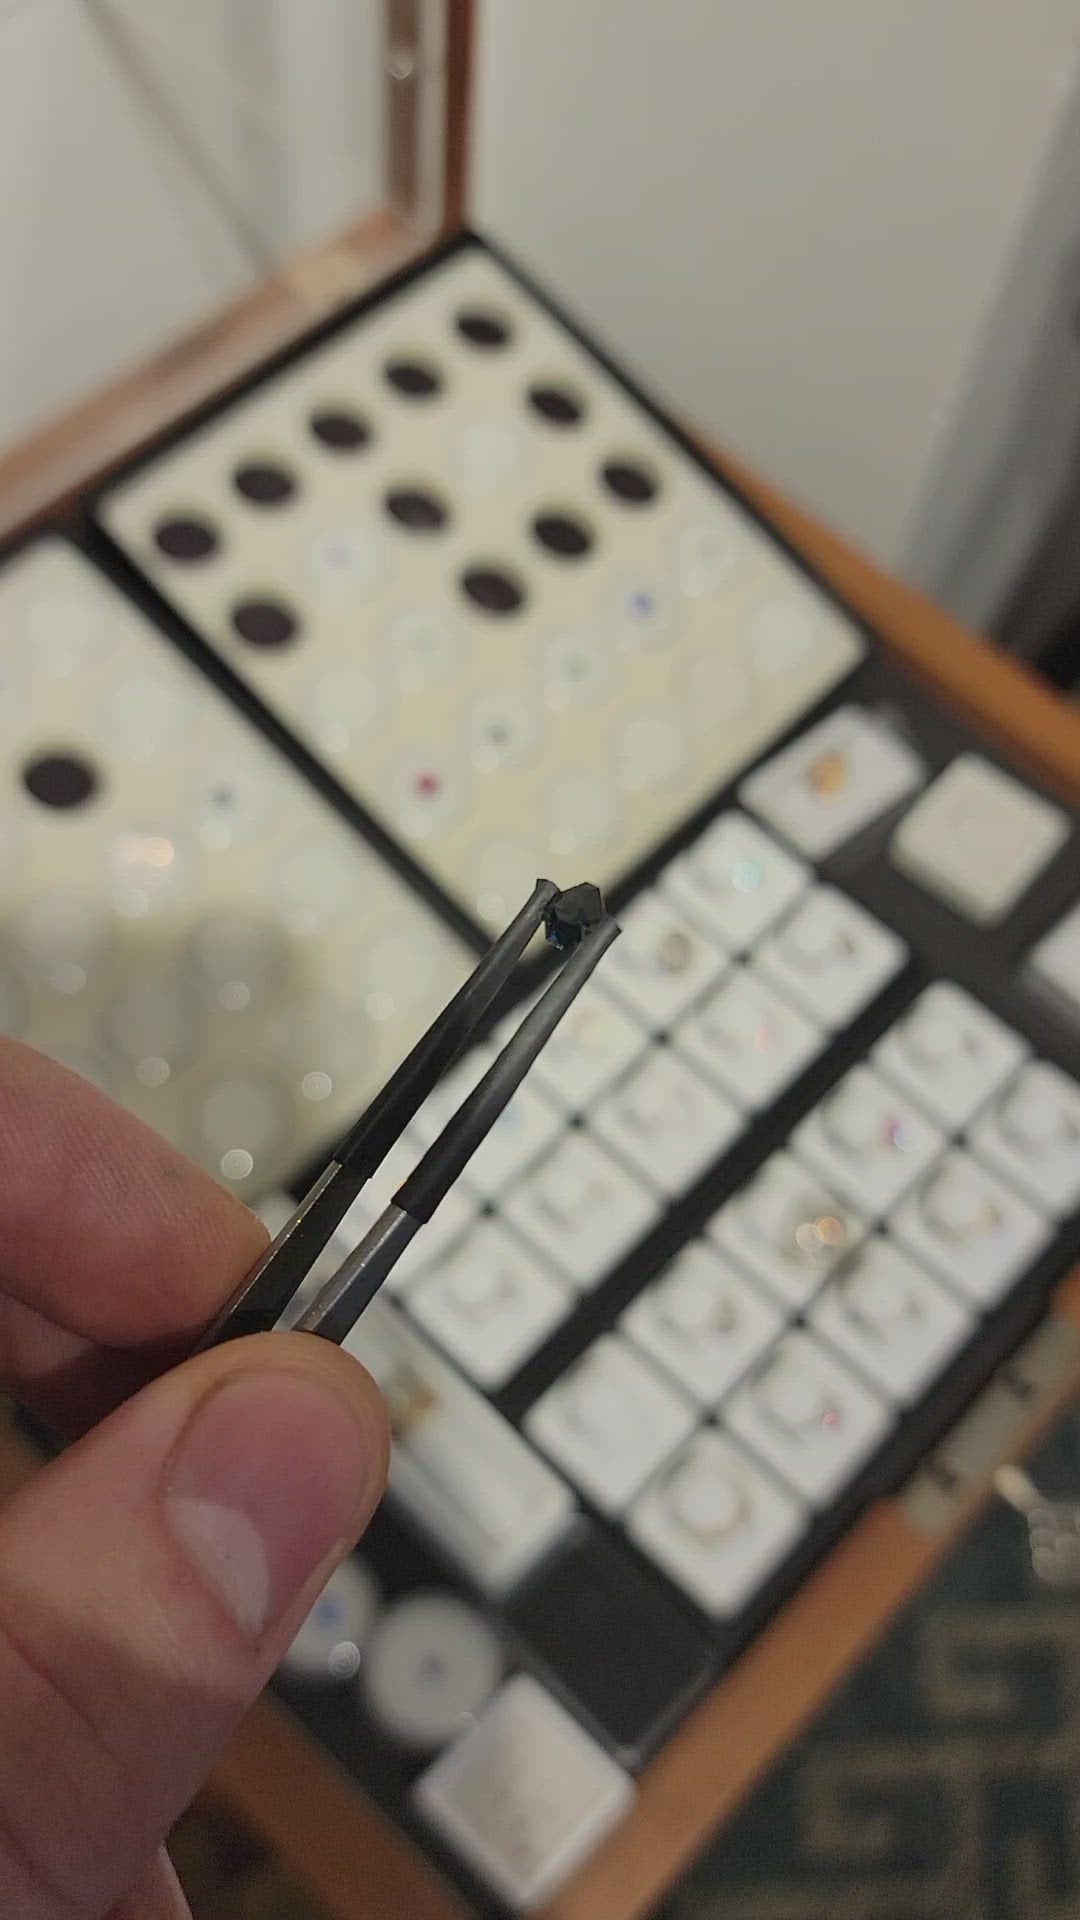 Octogone saphir sarcelle 0,64 carat - Taille fantaisie, 5,3 x 5,7 mm